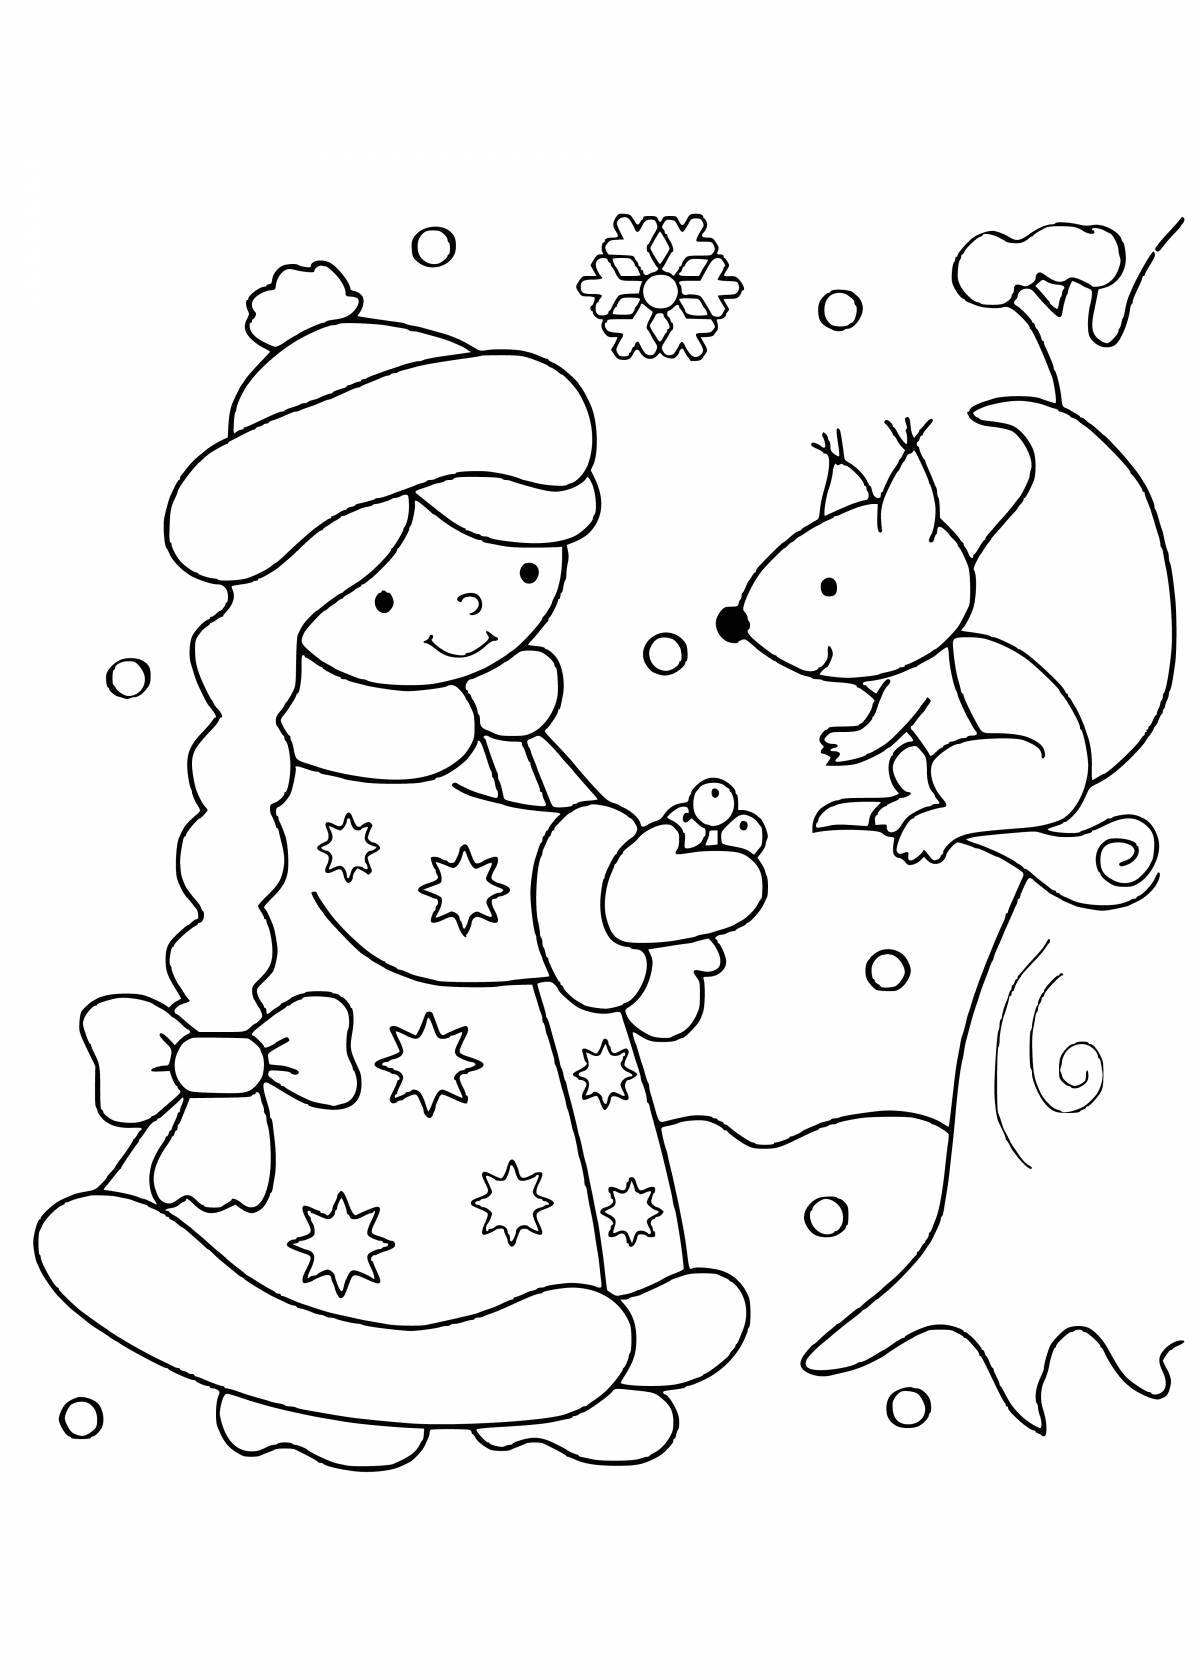 Новогодние раскраски для детей - распечатать бесплатно формат А4